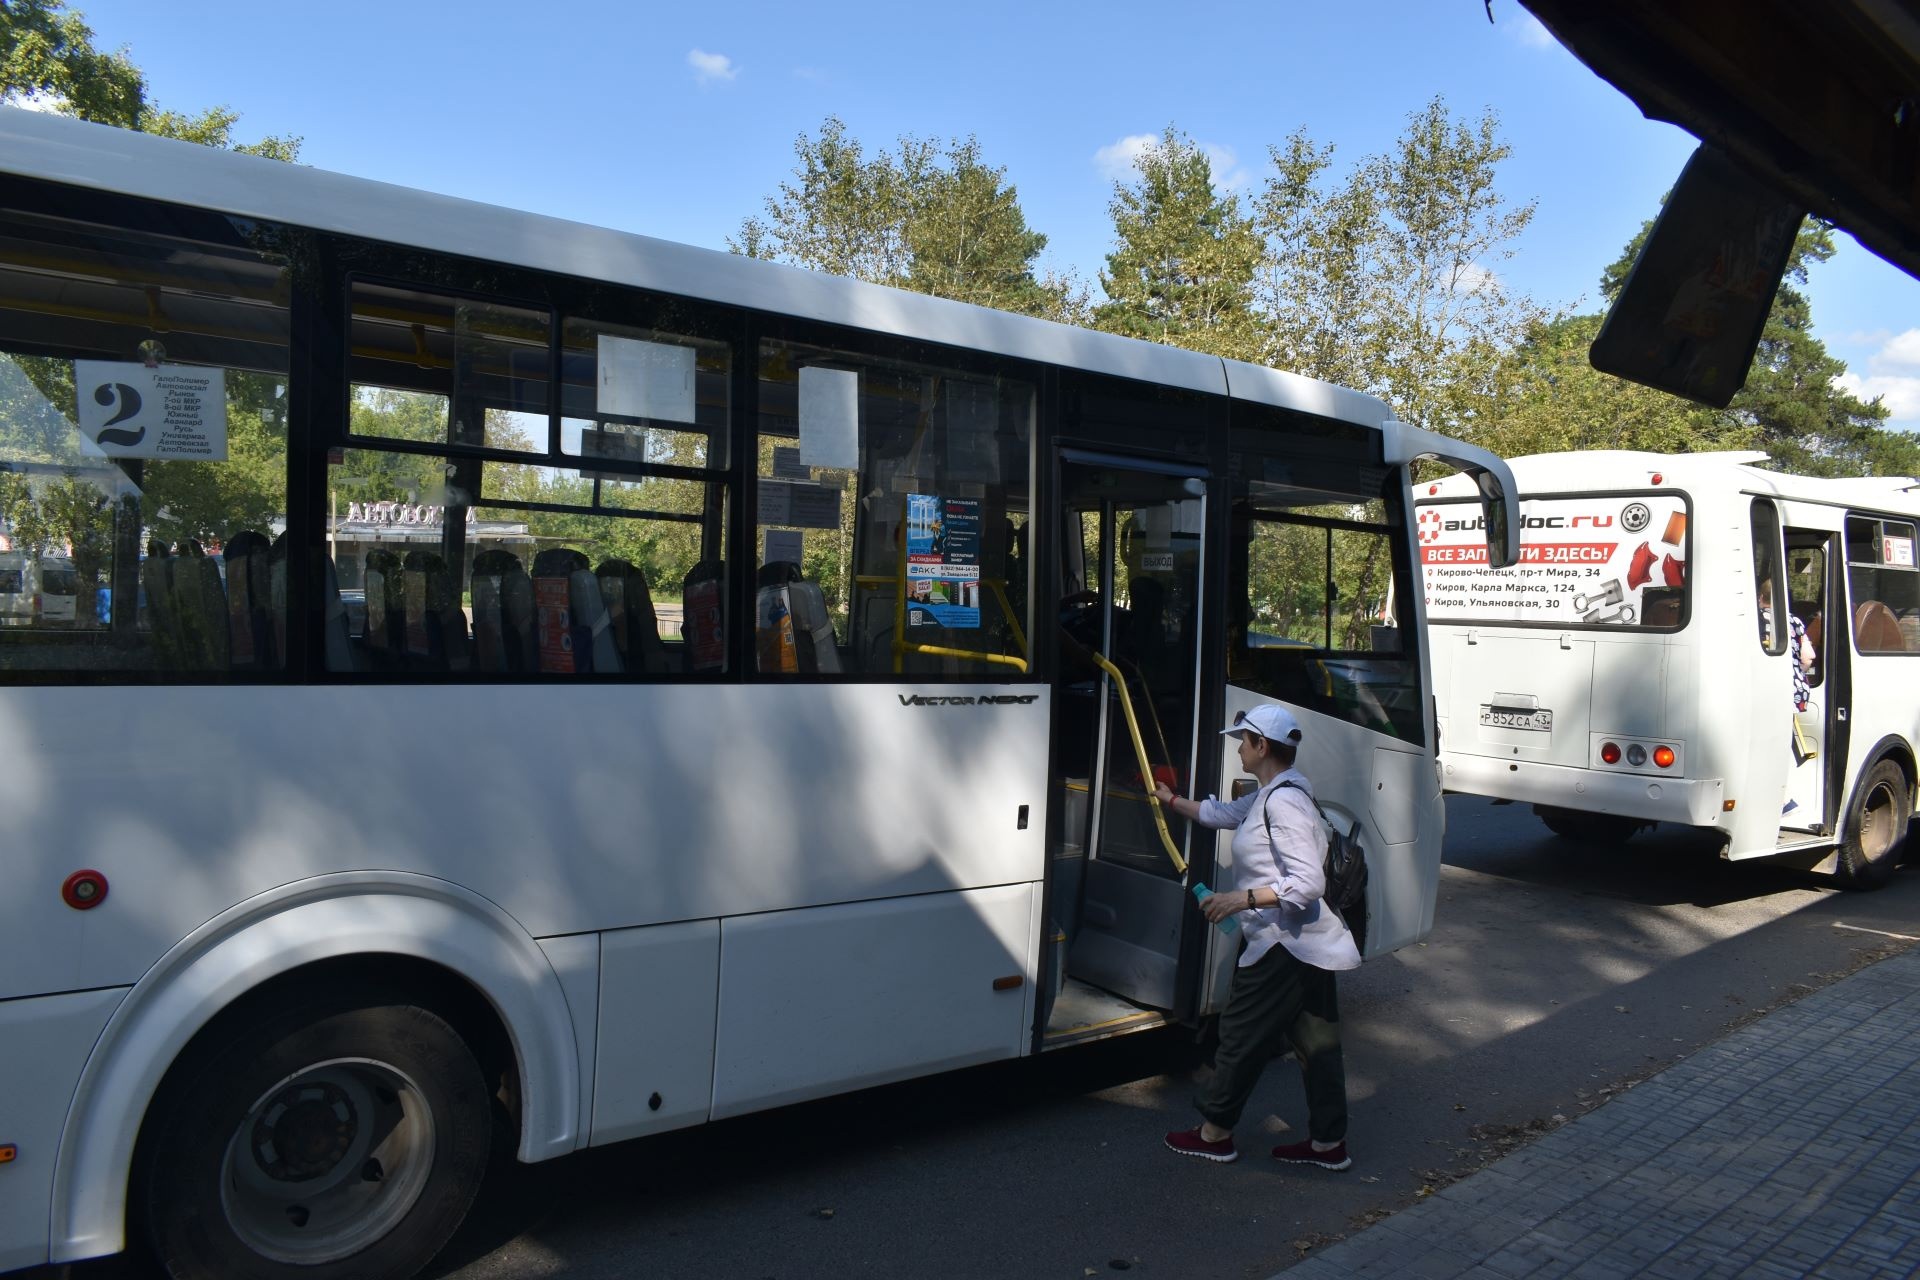 Стало известно, повысят ли тарифы на проезд в городском транспорте Кирово-Чепецка